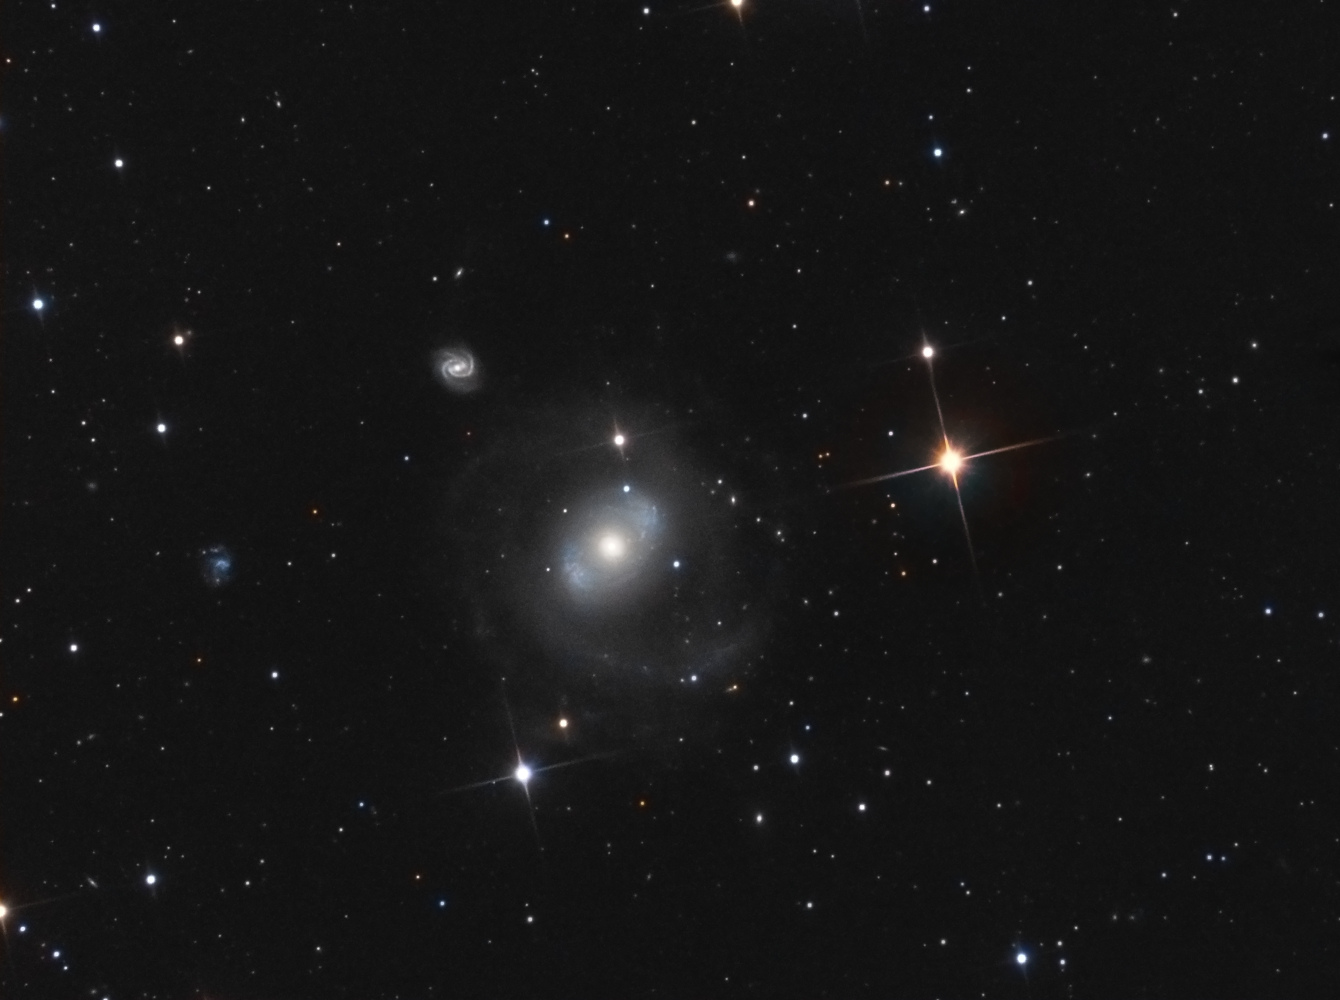 5e9aa95ea9112_NGC4151LRVB.jpg.91bfcd3fa6b3597ddecac4c8761602cb.jpg